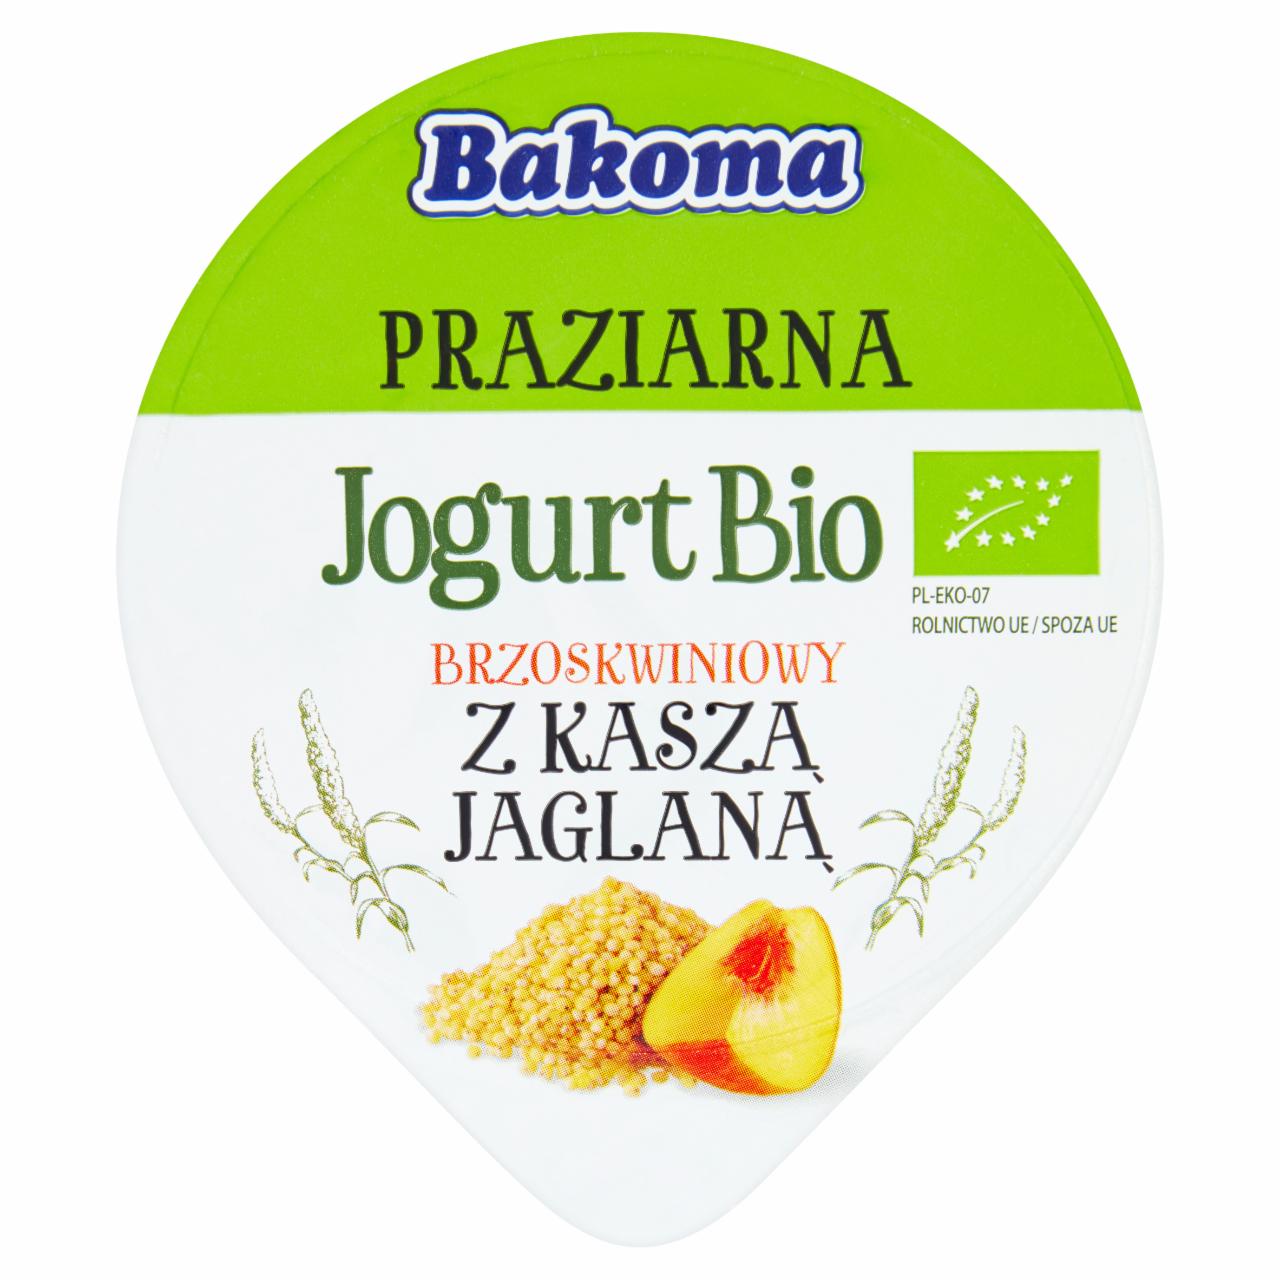 Zdjęcia - Bakoma Praziarna Jogurt Bio brzoskwiniowy z kaszą jaglaną 140 g